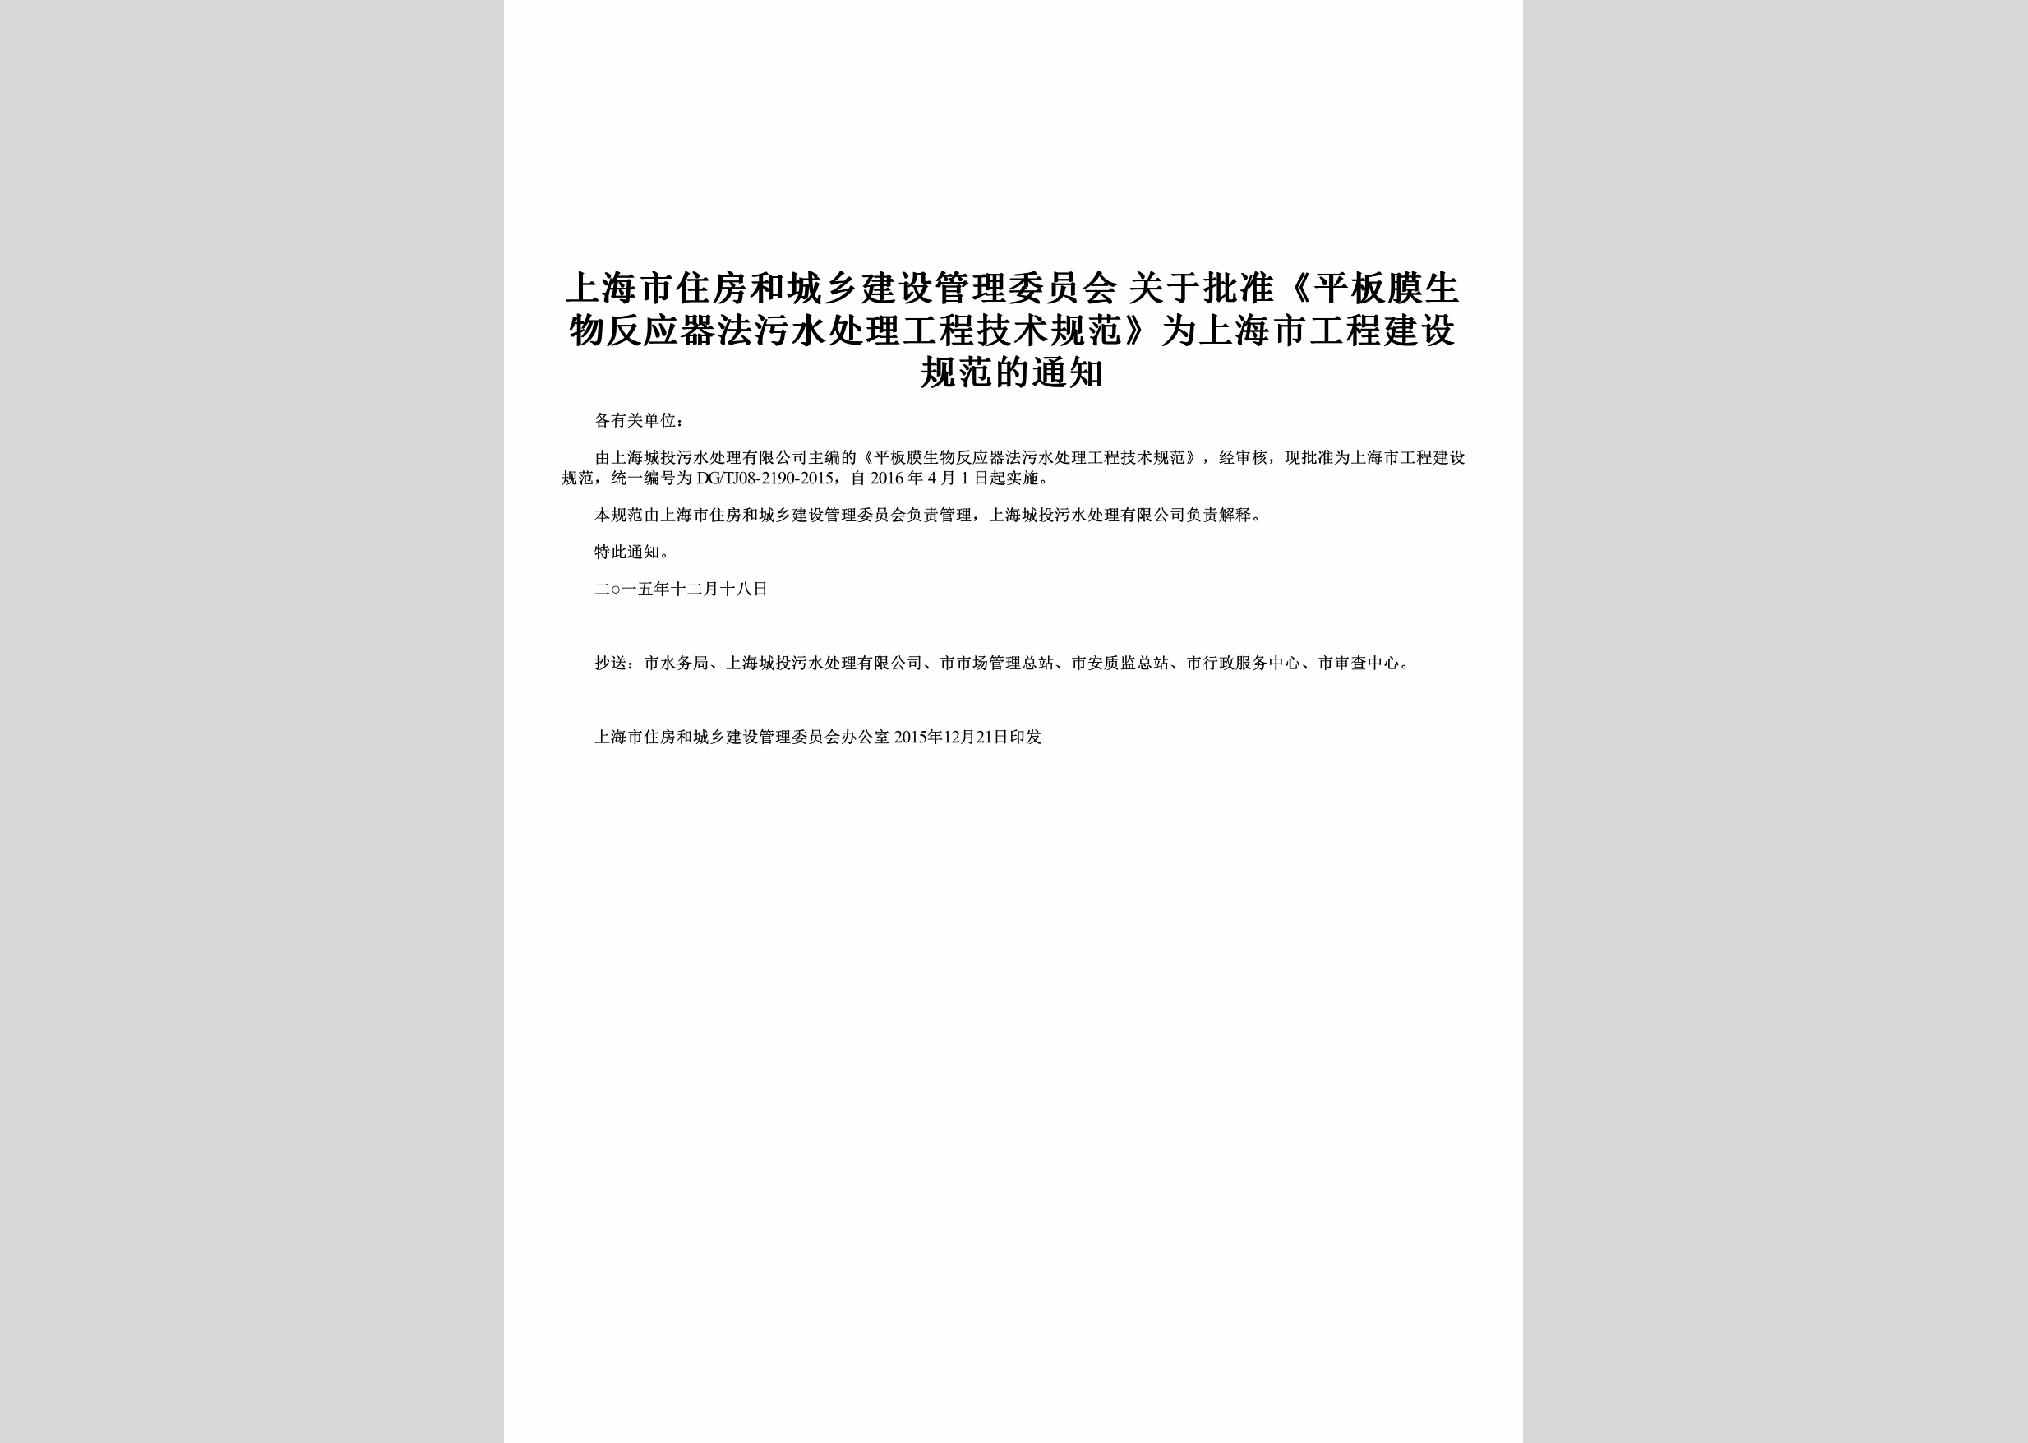 SH-WSCLGFTZ-2016：关于批准《平板膜生物反应器法污水处理工程技术规范》为上海市工程建设规范的通知